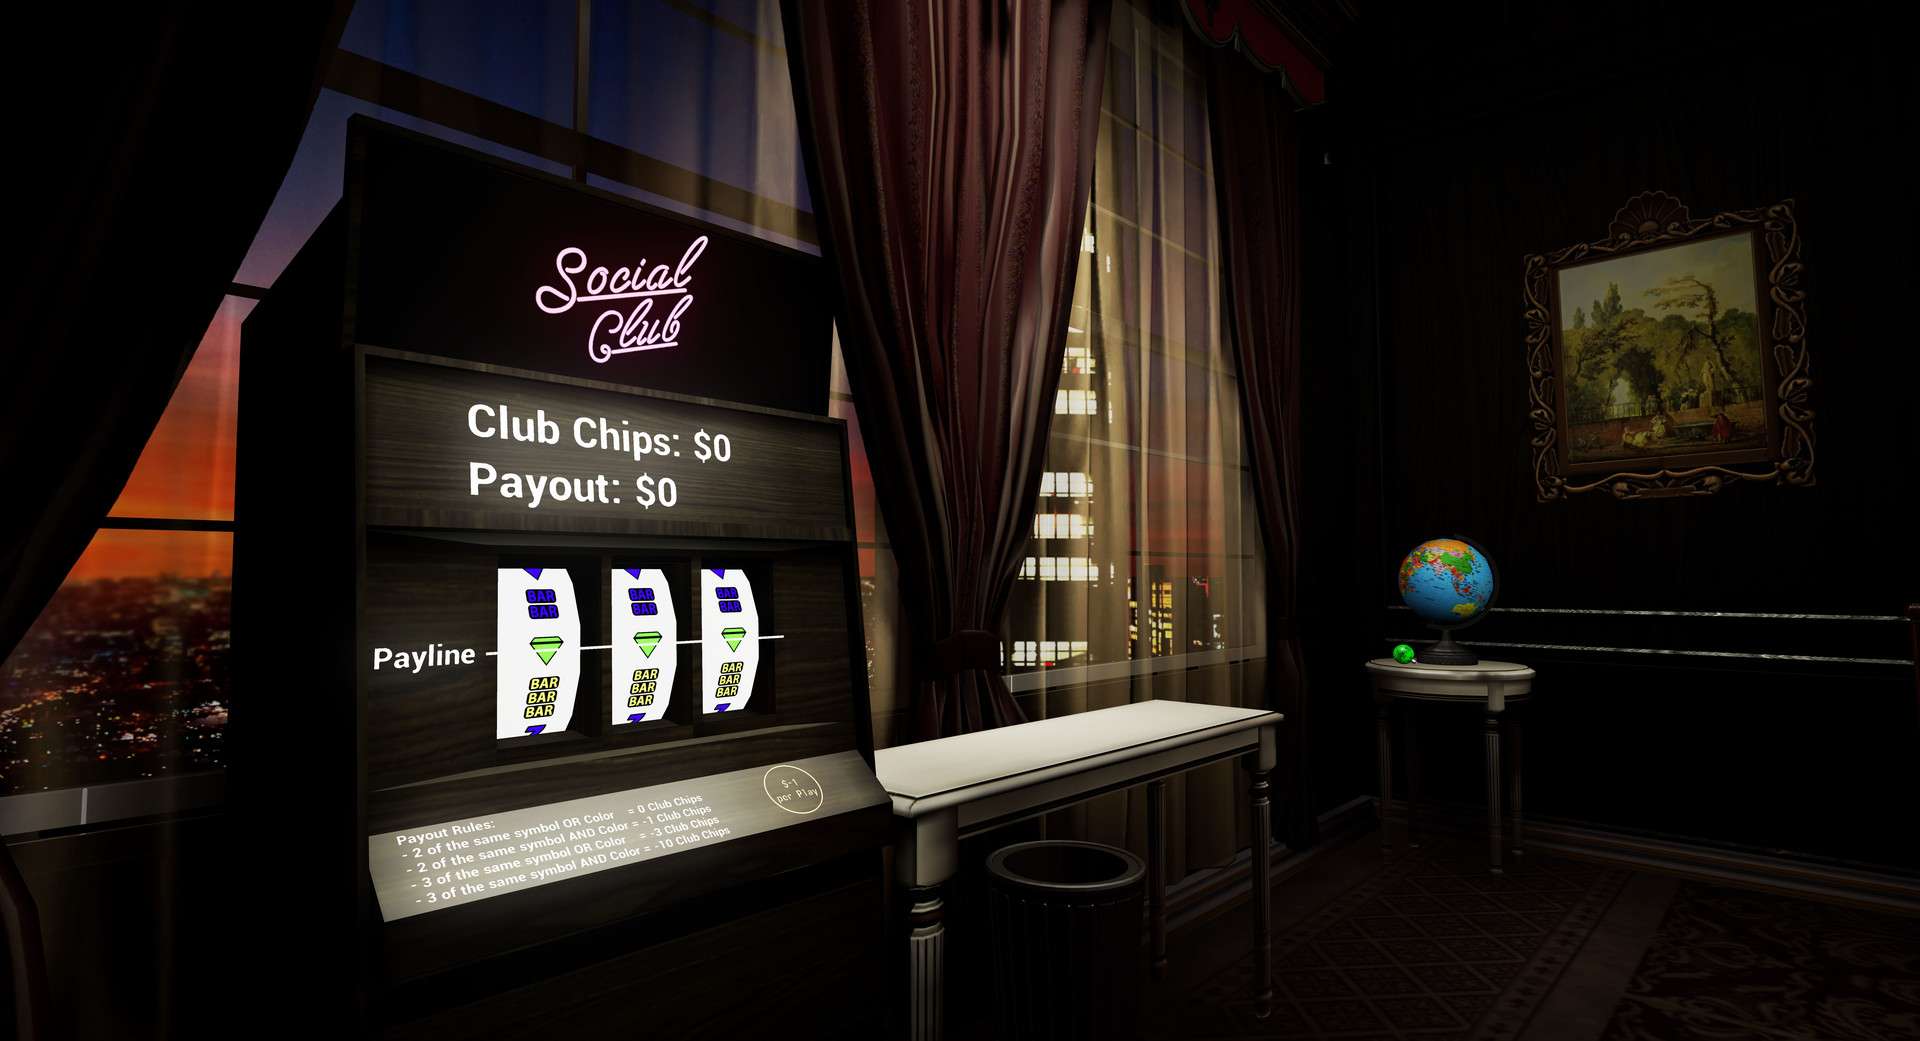 social club v1.1.0.6 setup.exe